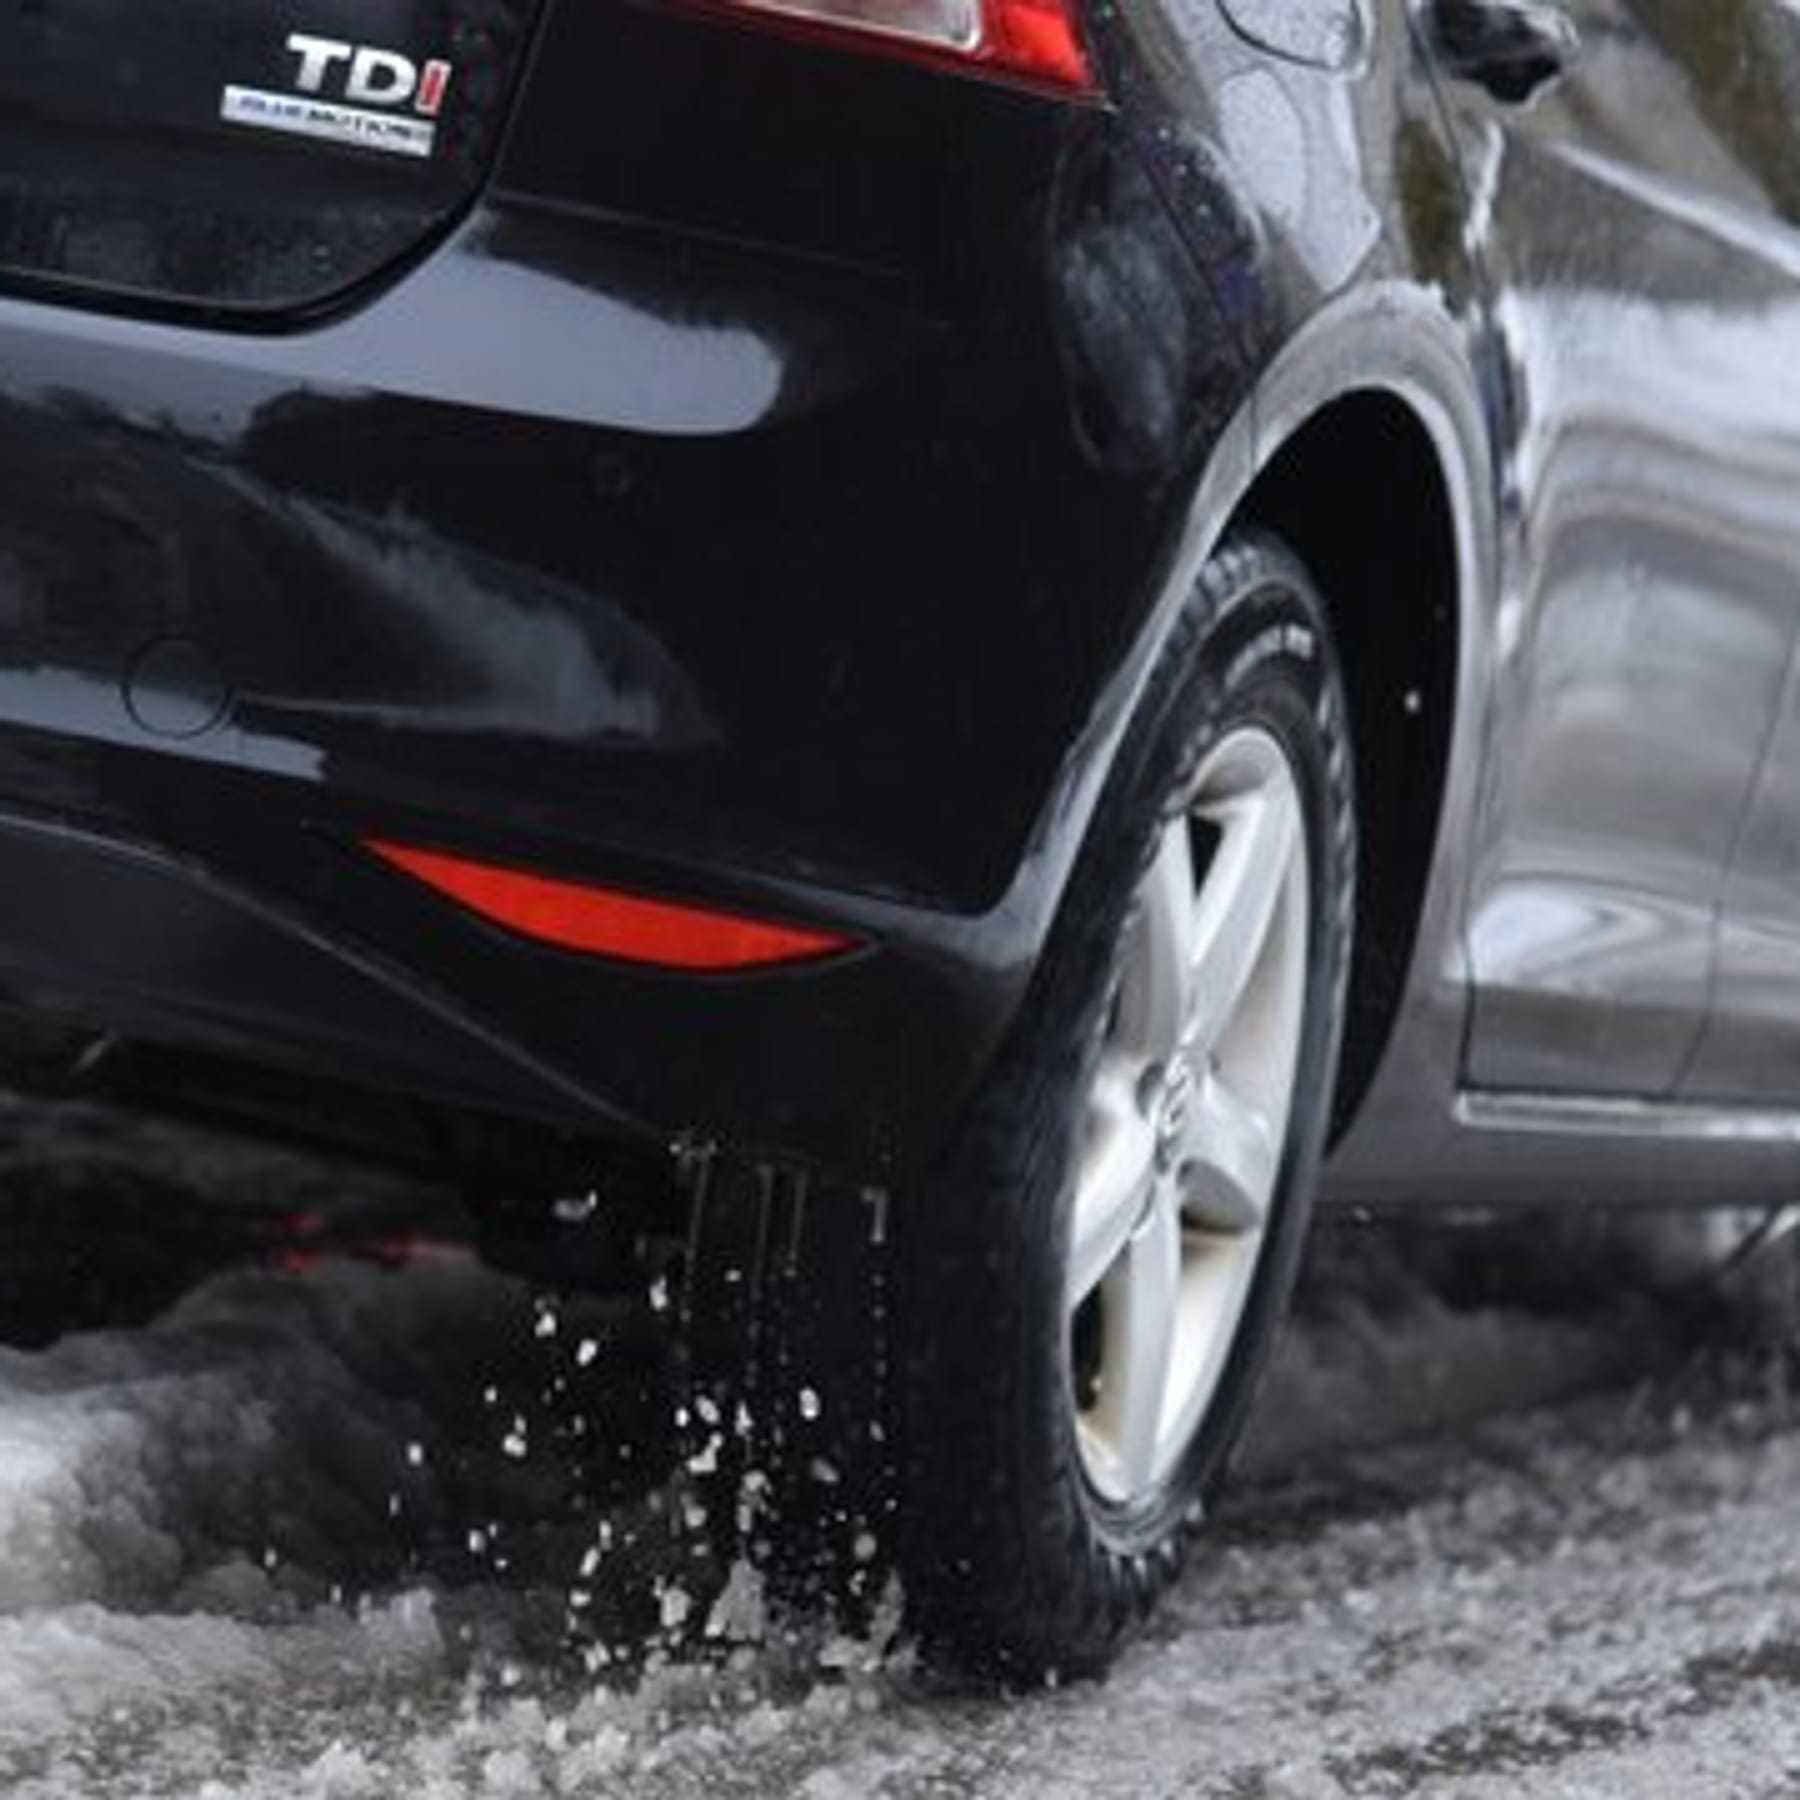 Autopflege im Winter: Diese Tipps schützen vor Salzfraß und Rost